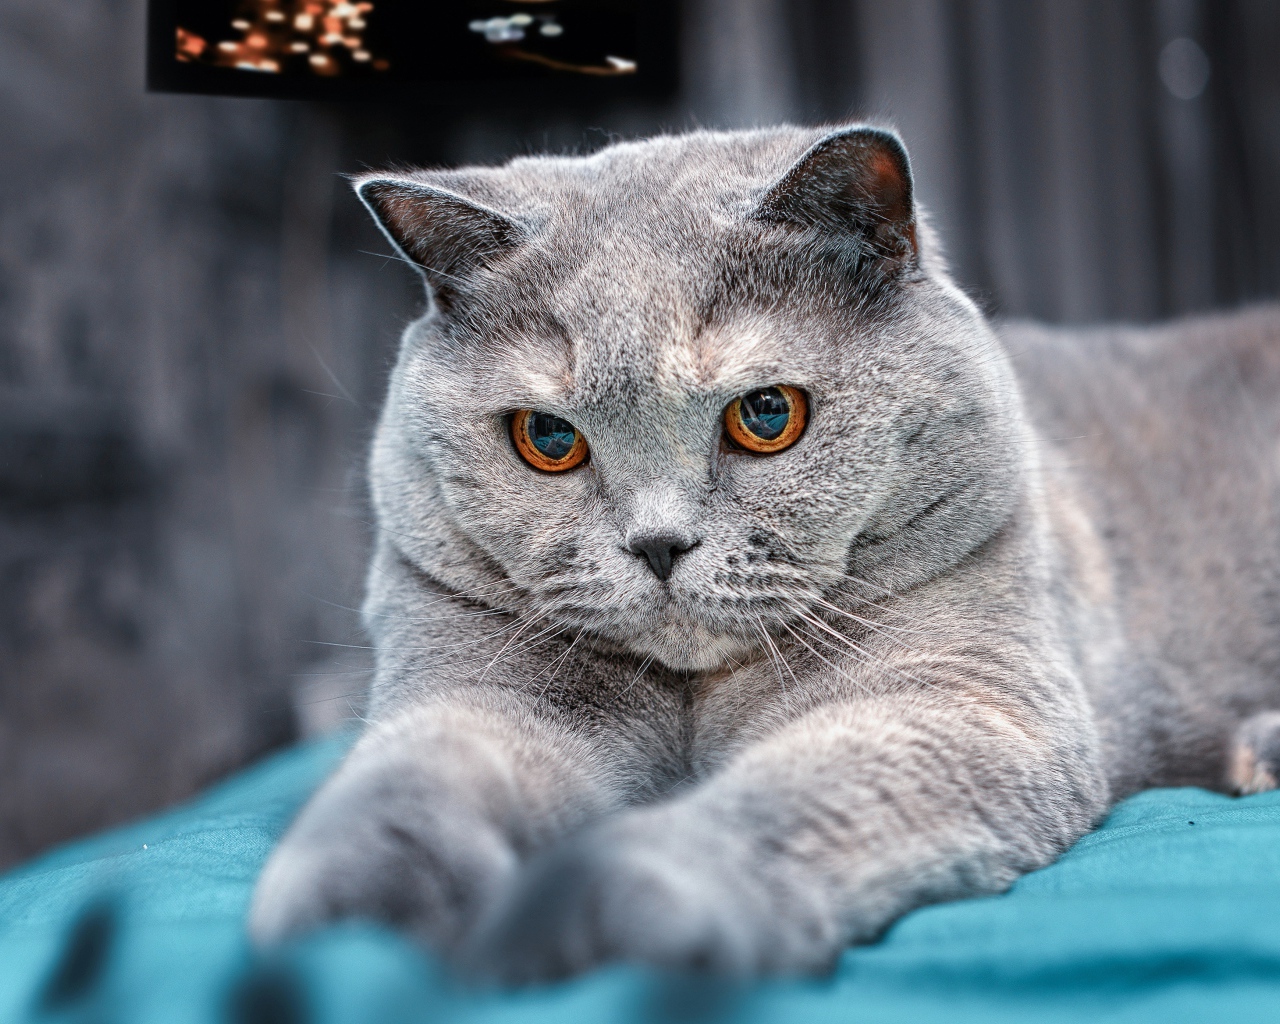 Пепельный британский кот с карими глазами на кровати